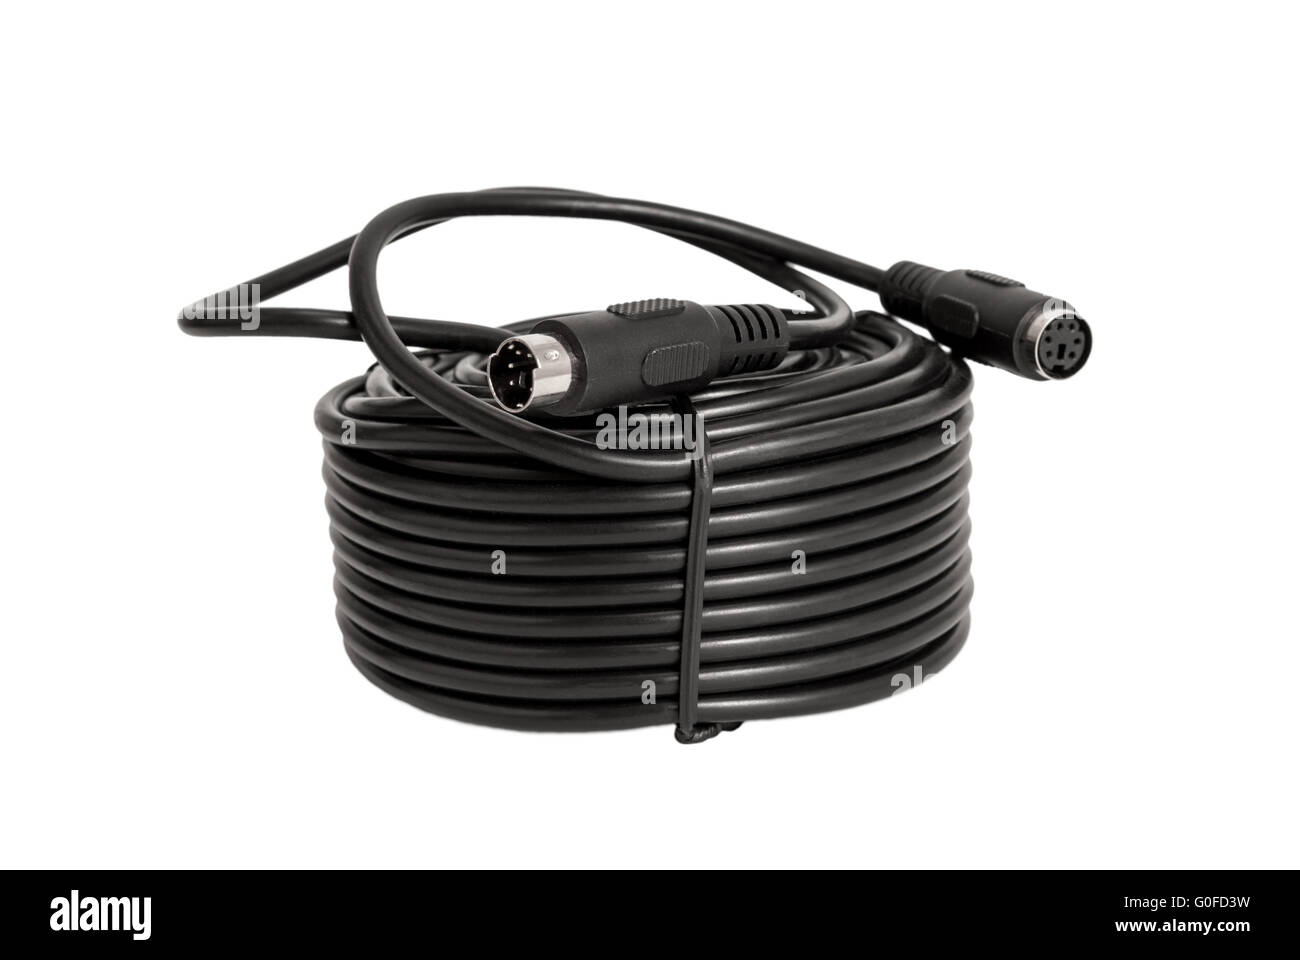 Collection électronique - des câbles coaxiaux avec des connecteurs PS2 pour caméras de surveillance (CCTV) isolées Banque D'Images